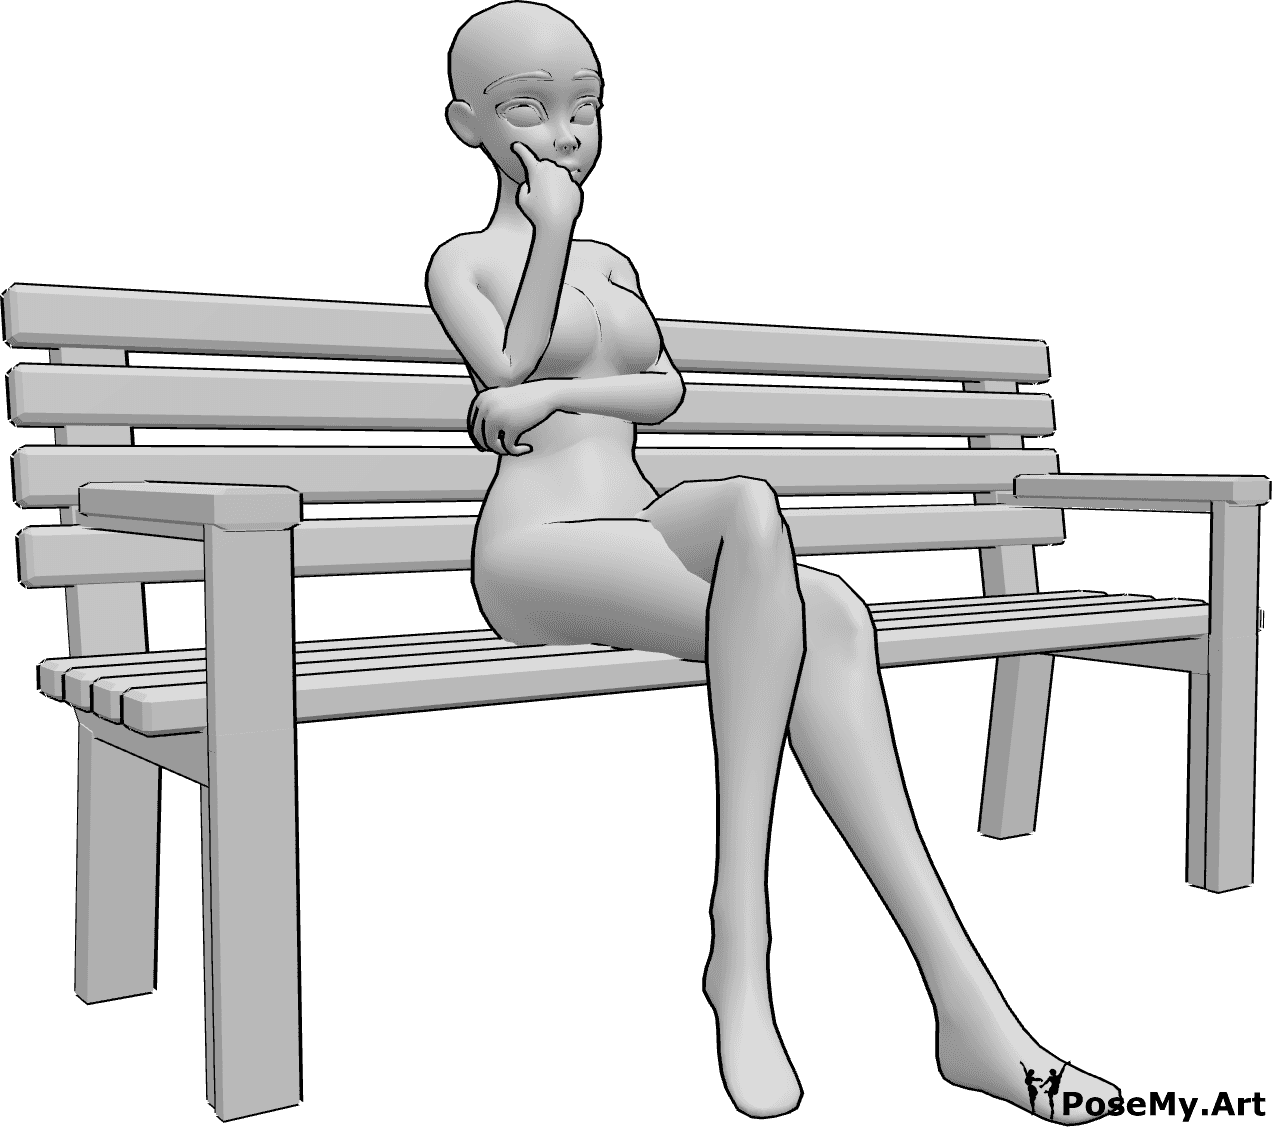 Référence des poses- Anime assis sur un banc - Une femme est assise seule sur un banc, ses jambes sont croisées et elle regarde vers l'avant, en pensant